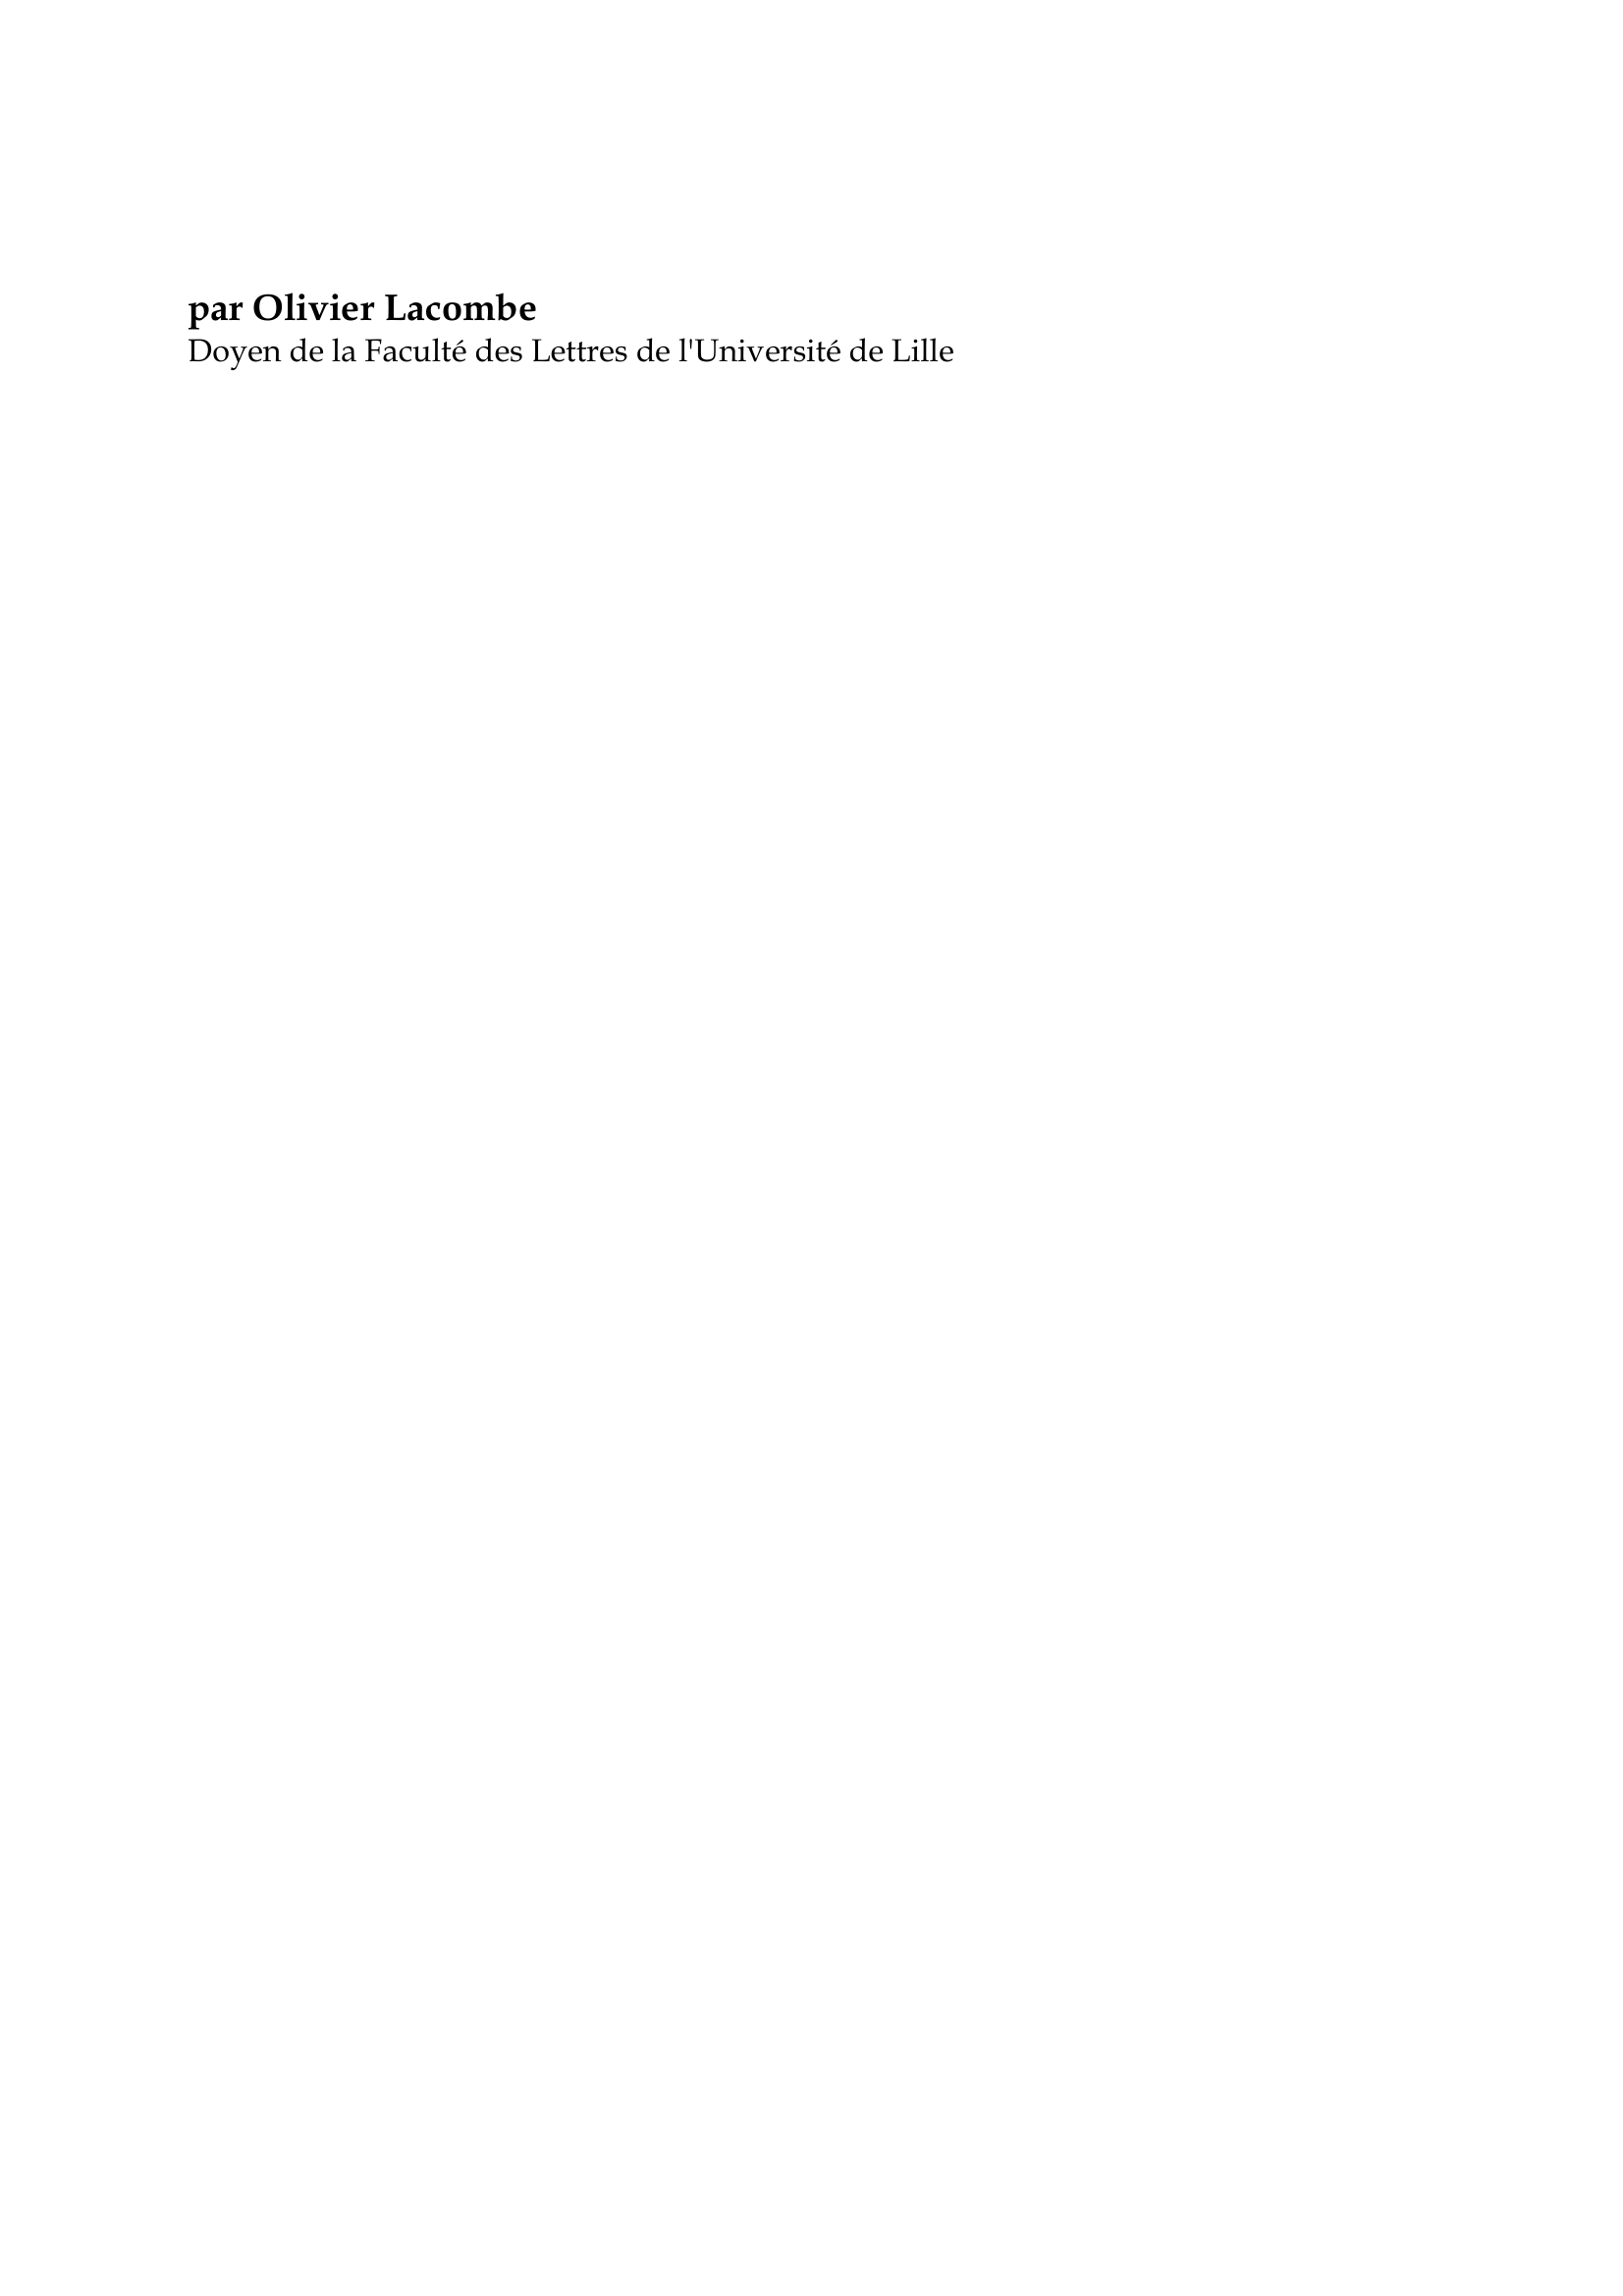 Prévisualisation du document Saint Thomas d'Aquin

par Olivier Lacombe
Doyen de la Faculté des Lettres de l'Université de Lille

Thomas d'Aquin naquit au château de Rocca-Secca, près d'Aquino, en Italie
méridionale, d'une haute et puissante famille.